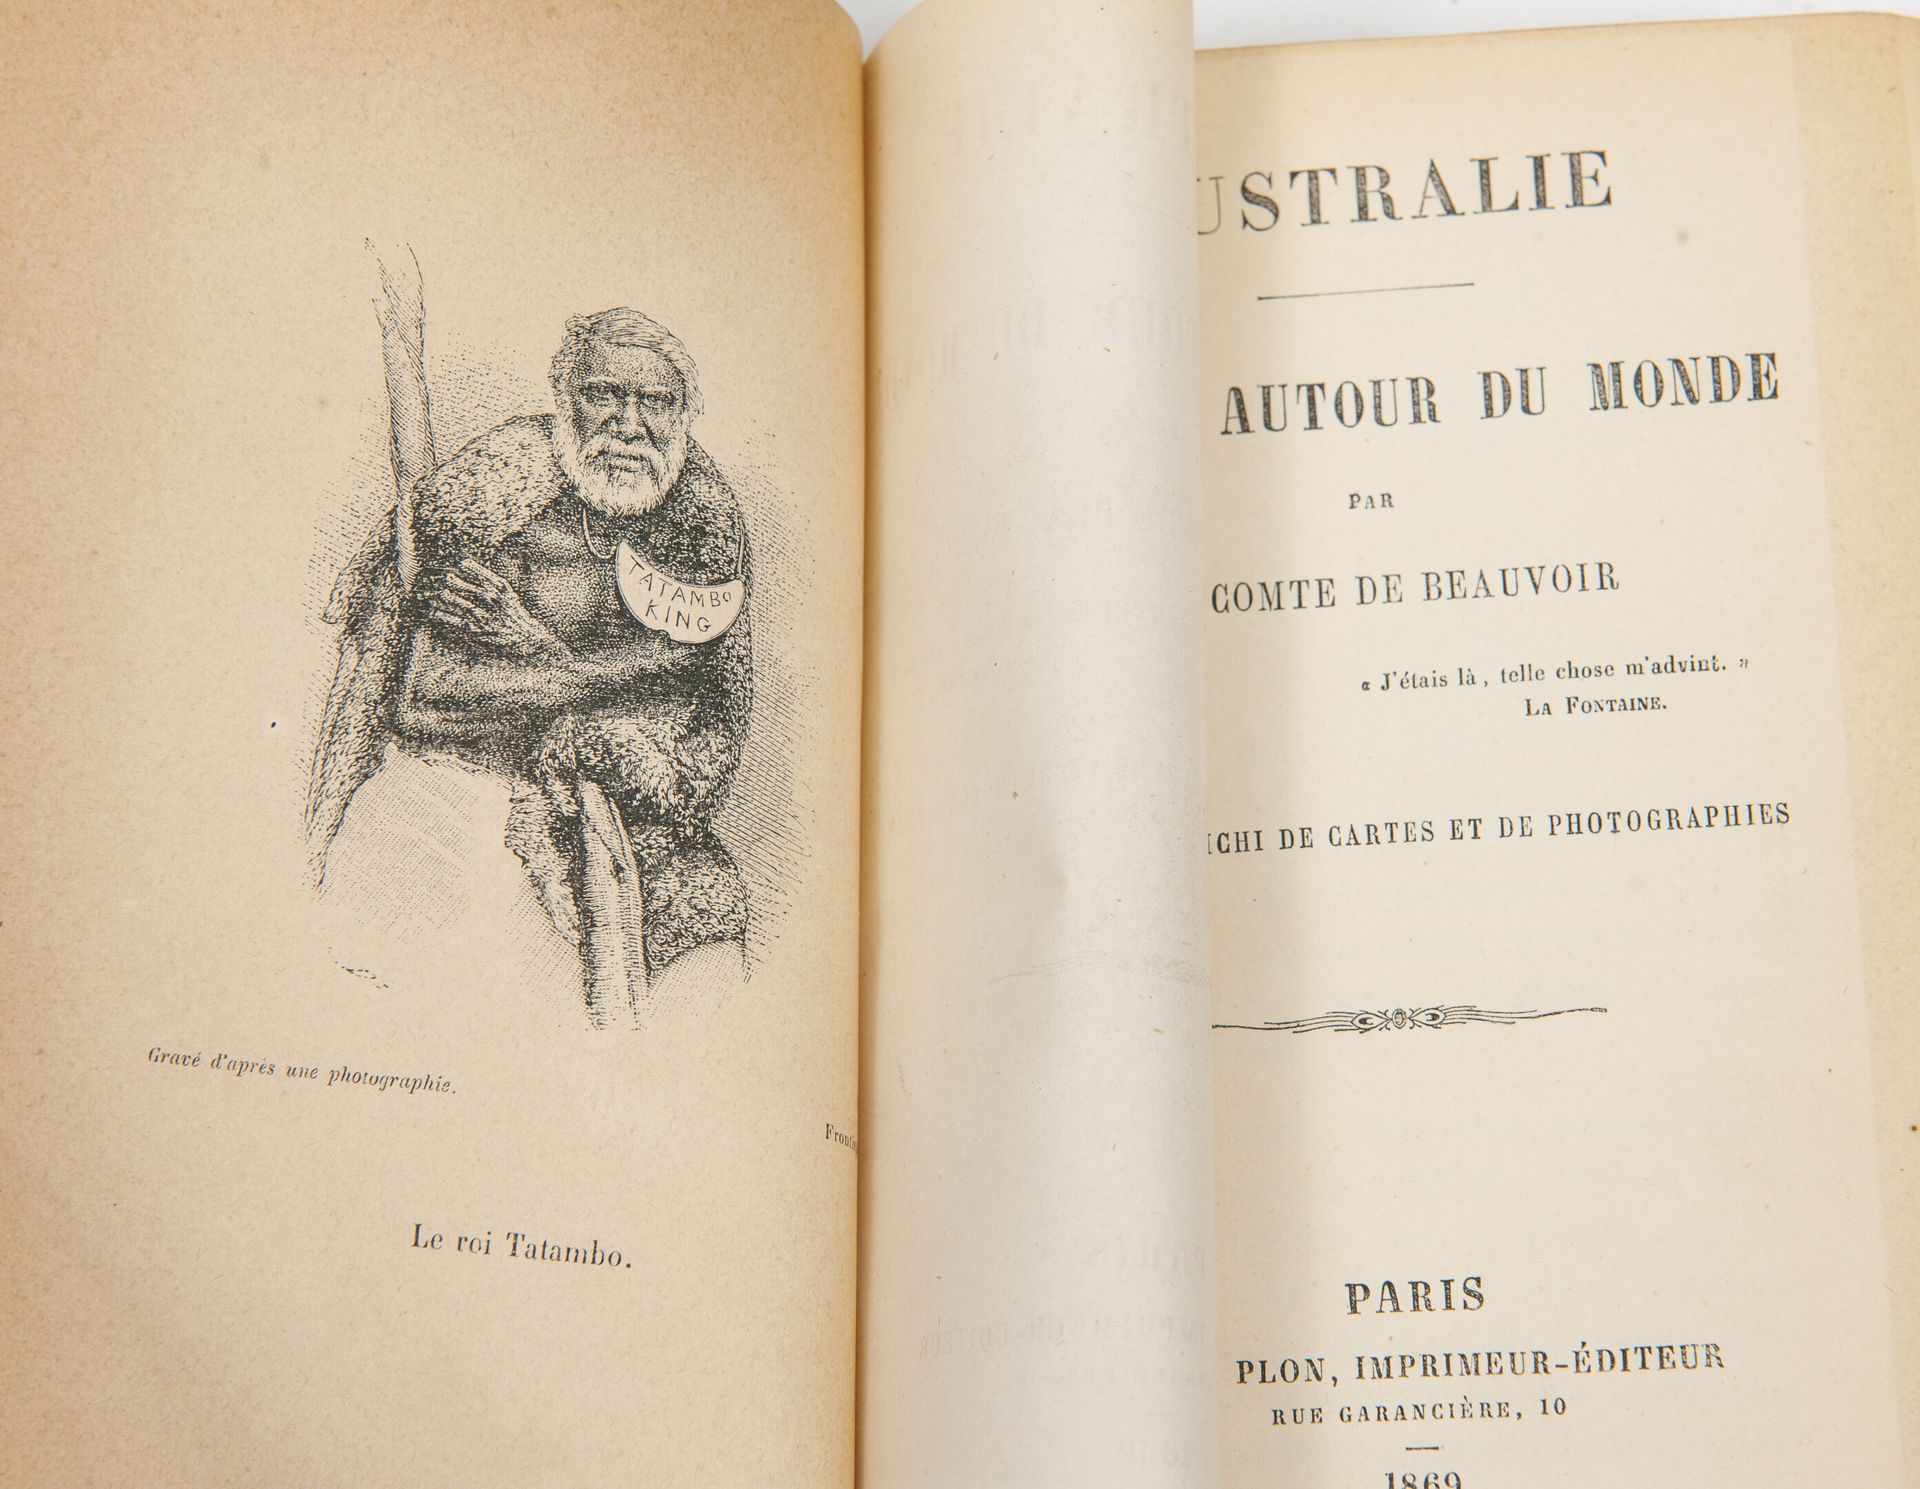 BEAUVOIR (Ludovic, Cte de) Viajes por el mundo.

París, Plon, 1869-1872, 3 vol. &hellip;